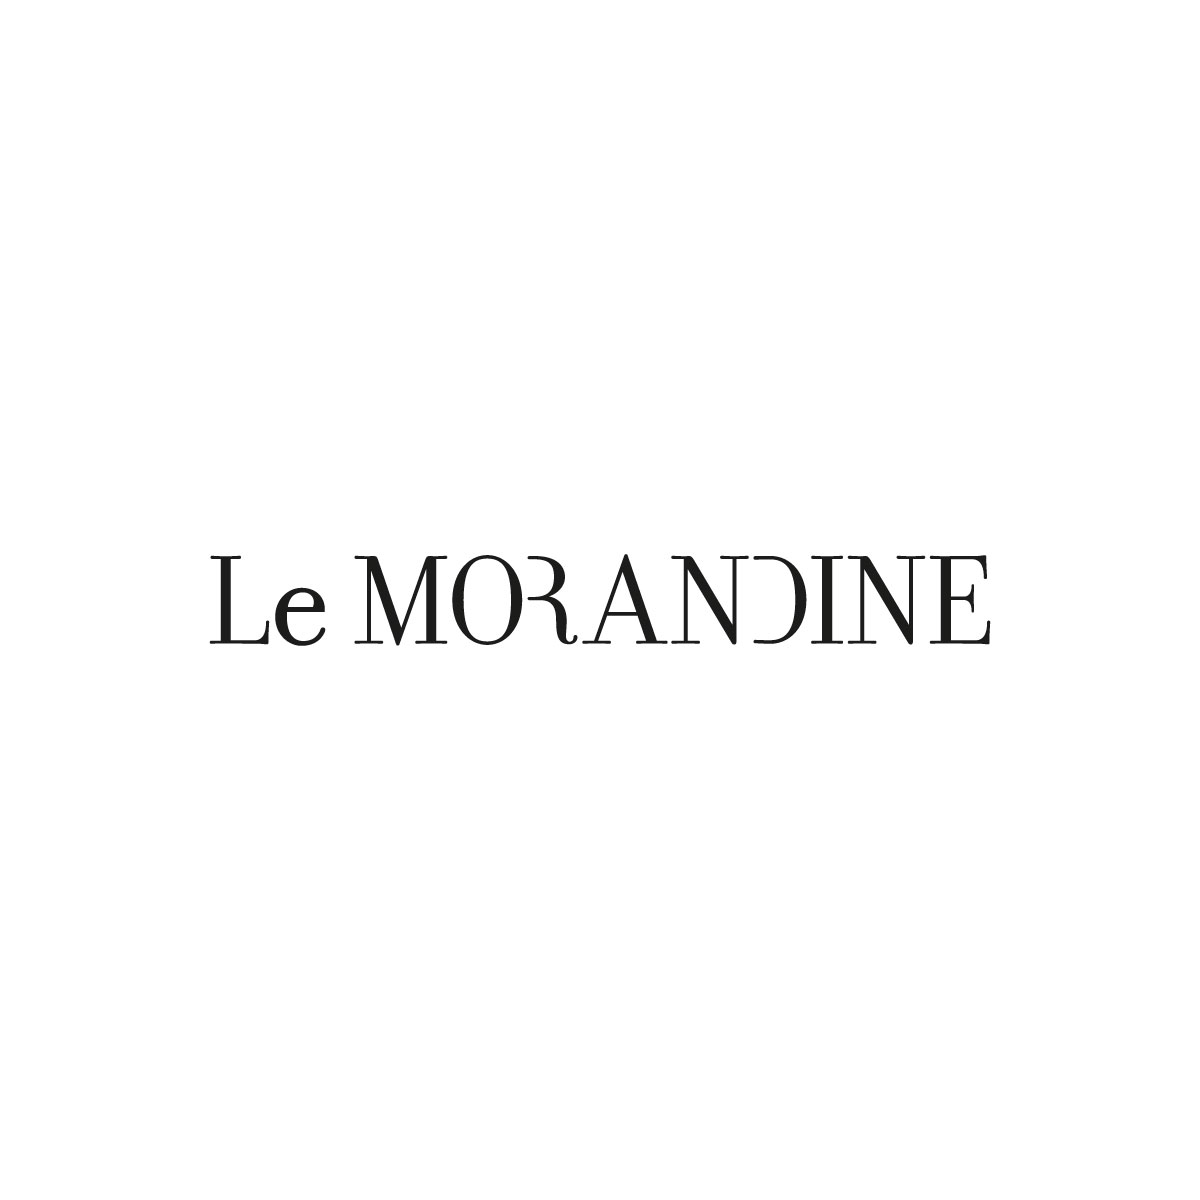 Le Morandine